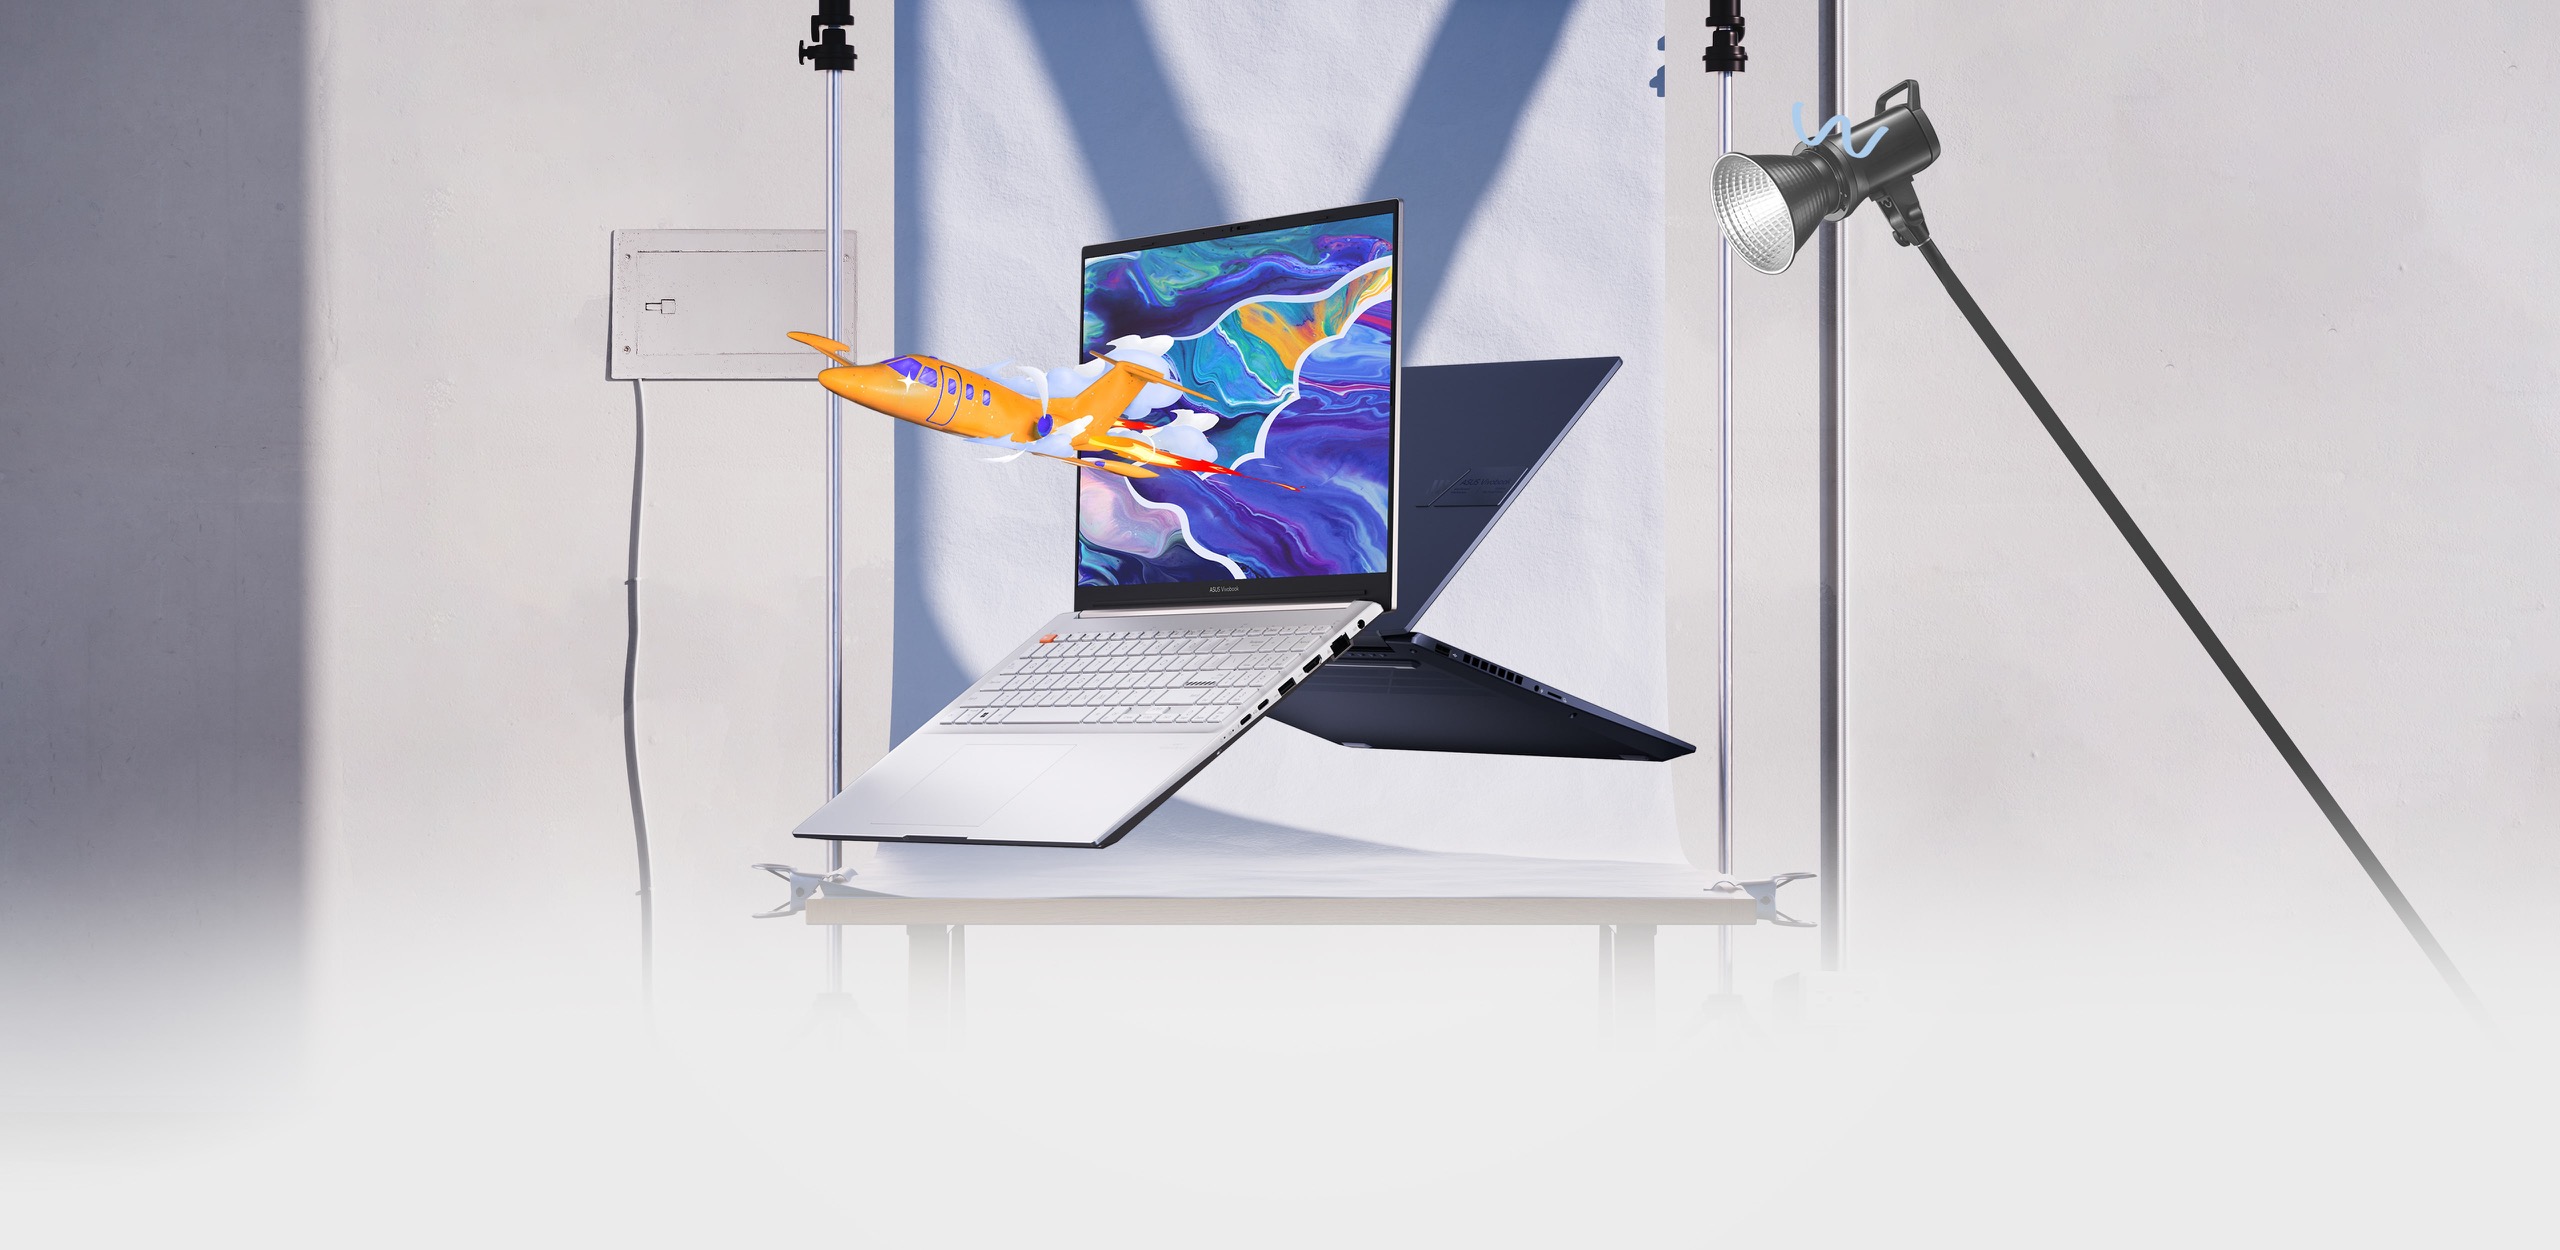   兩台 Vivobook Pro 16 OLED 筆電的前、後視圖，其中一台顯示飛機從螢幕上的彩色圖形中躍出